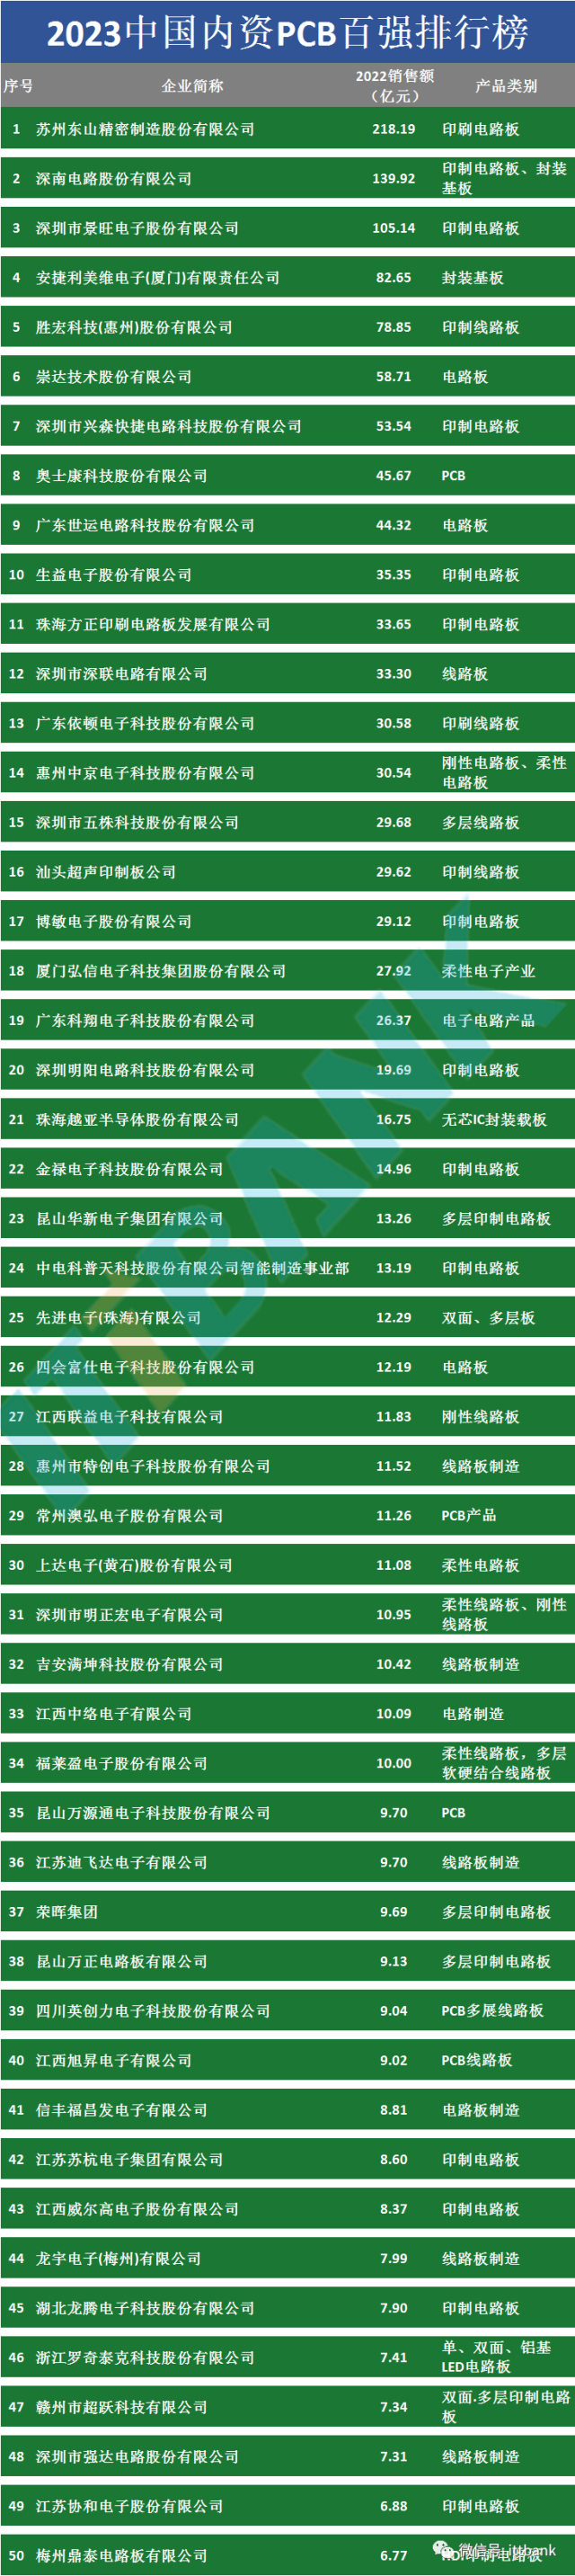 中国PCB百强（TOP 100）排行榜